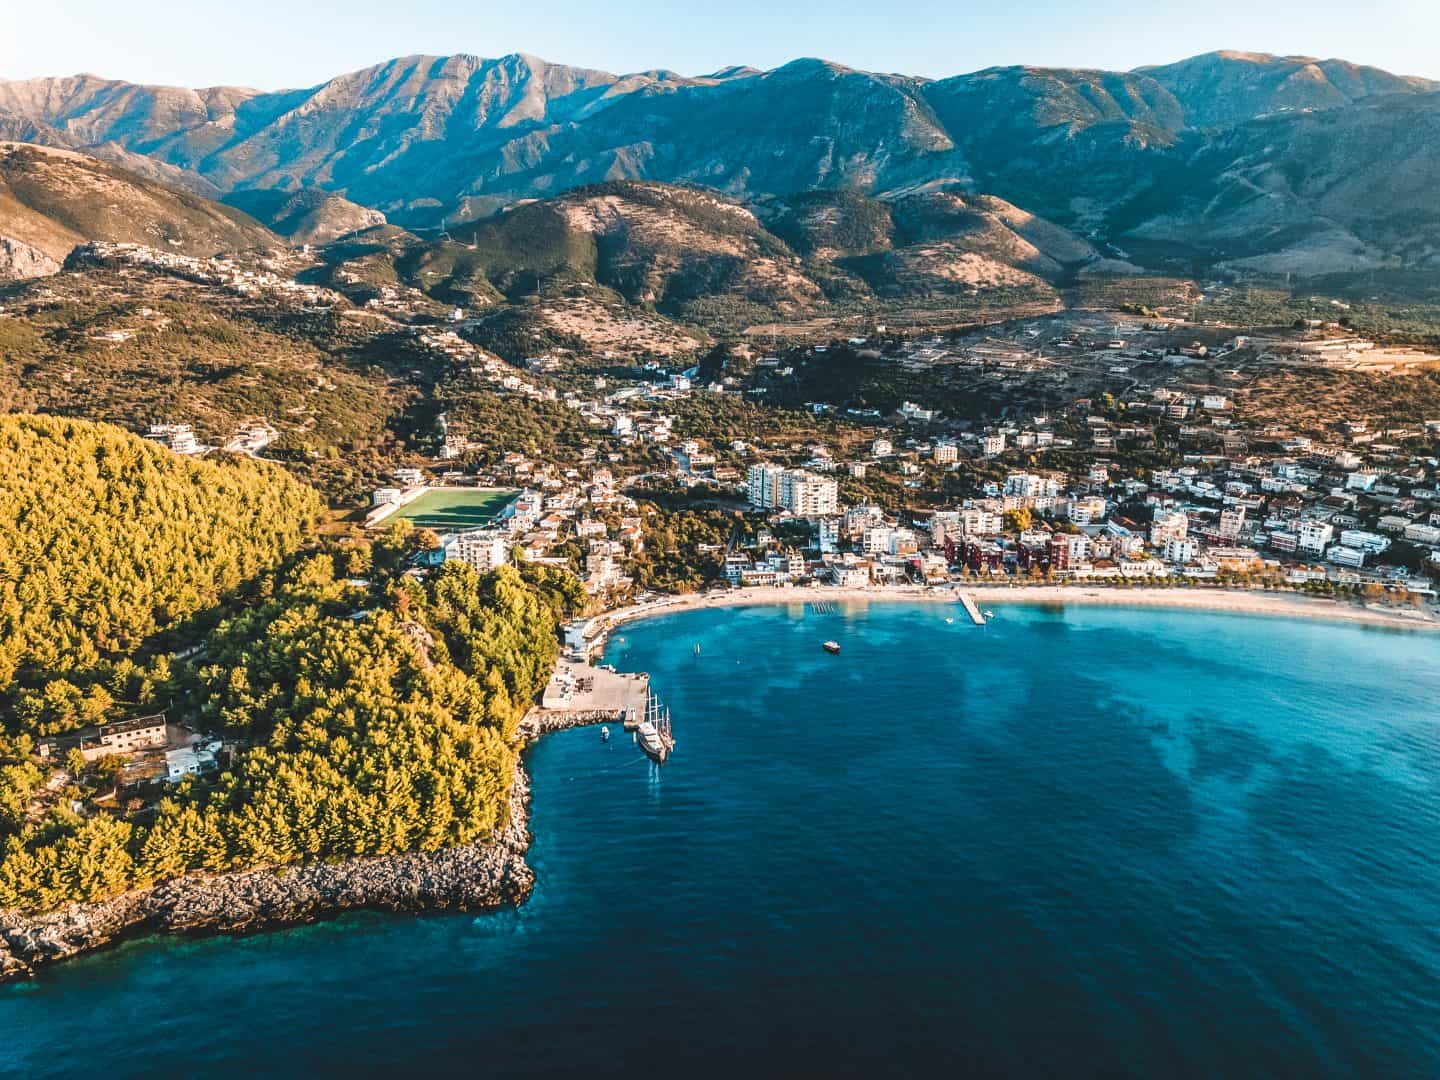 El mejor itinerario de 1 semana en Albania, vista aérea de la ciudad ubicada entre la costa del océano y las montañas